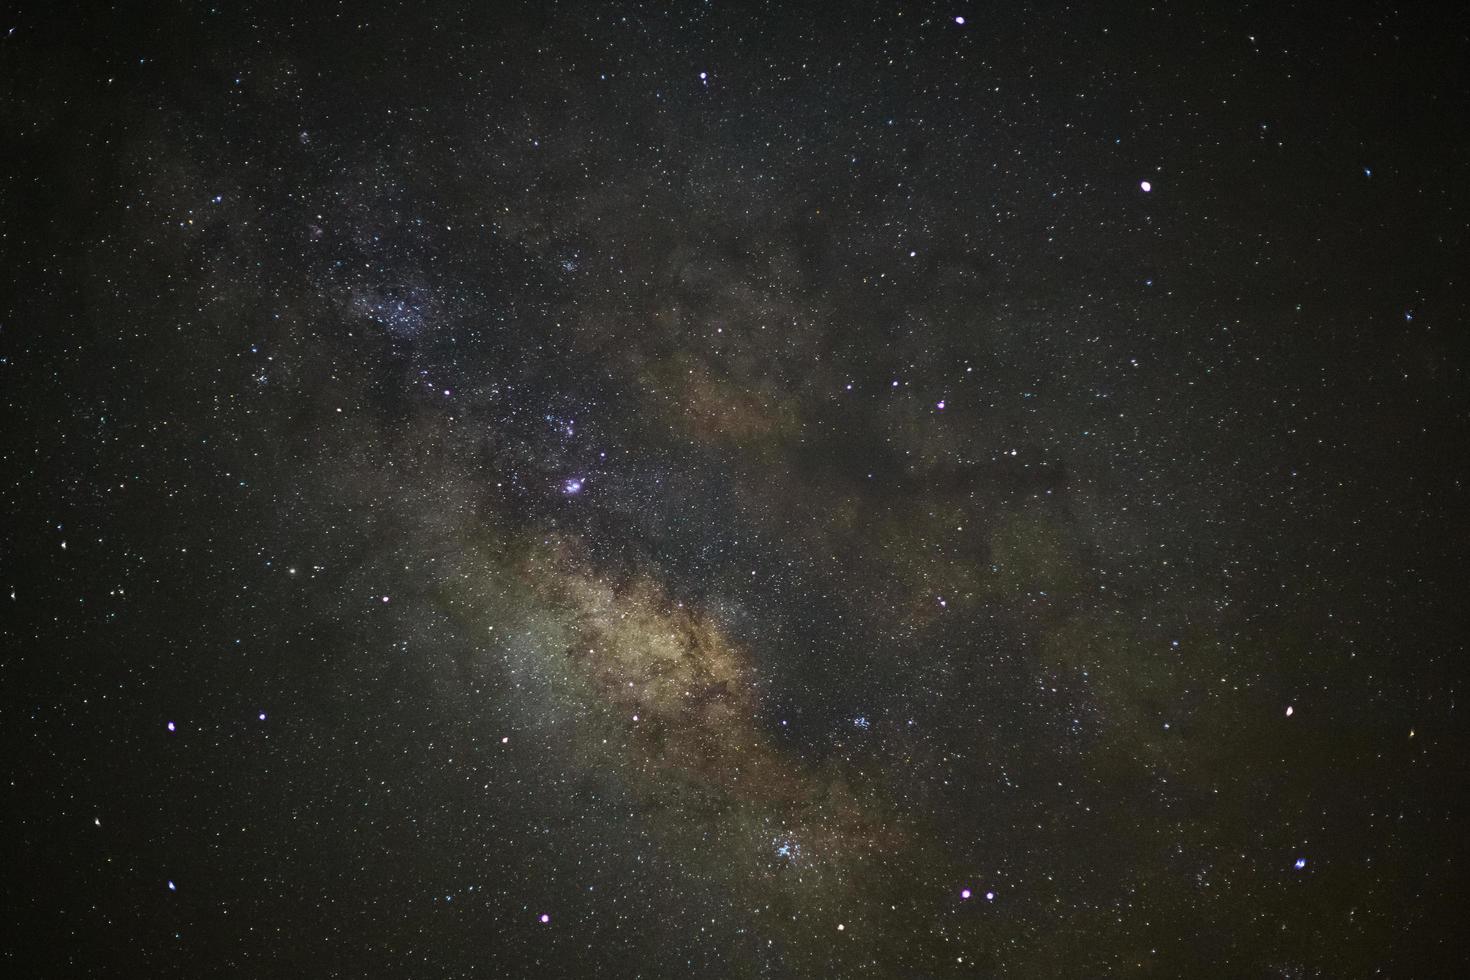 Sternenhimmel und Milchstraßengalaxie mit Sternen und Weltraumstaub im Universum foto